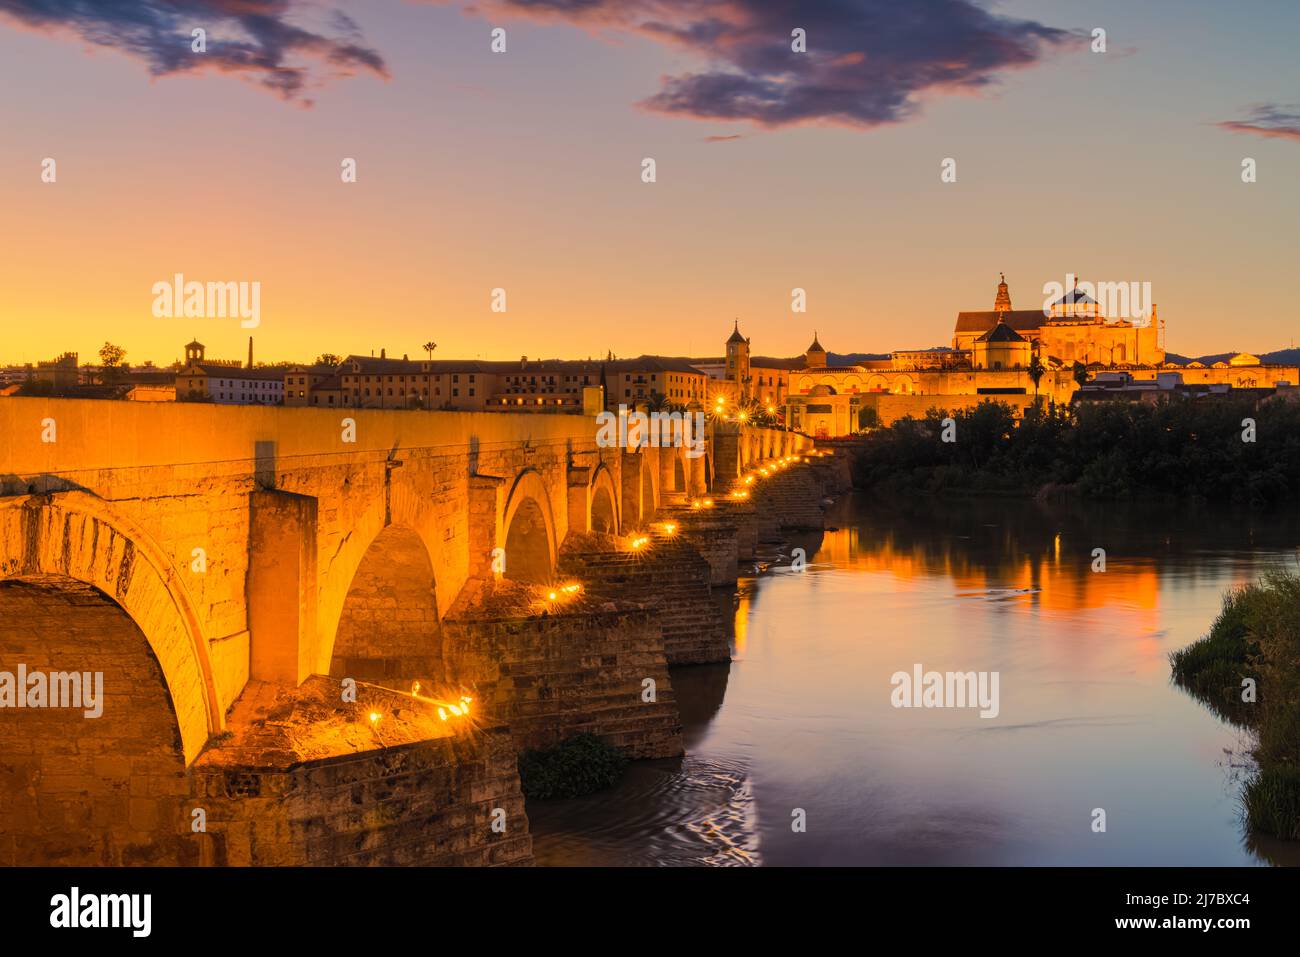 Ein Abend an der alten römischen Brücke in Cordoba. Im Hintergrund die große Moschee von Cordoba (Mezquita). Aufgenommen in der Stadt Cordoba, Andalusien, in t Stockfoto